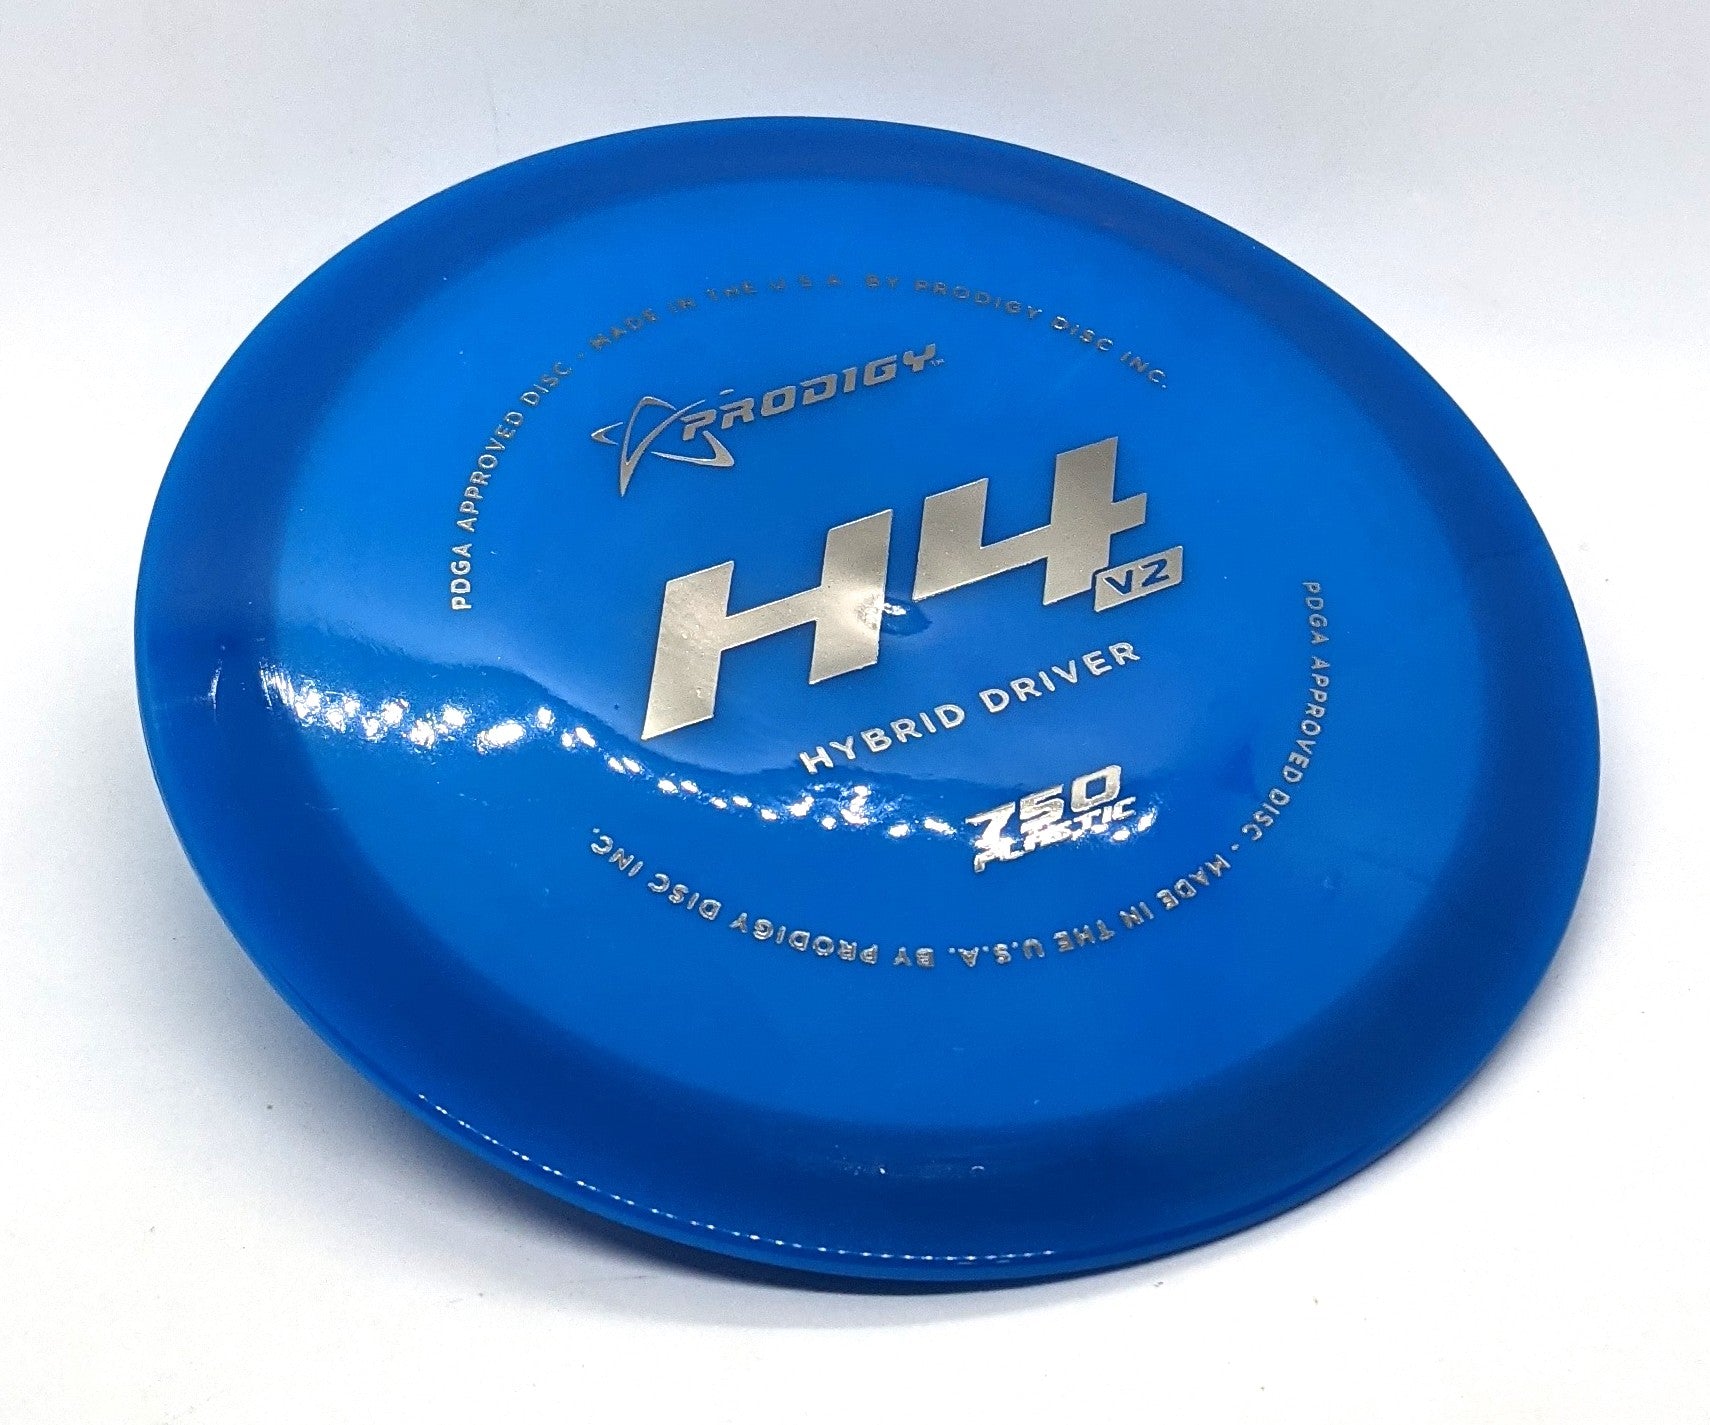 Buy blue-silver-foil Prodigy H4v2 750